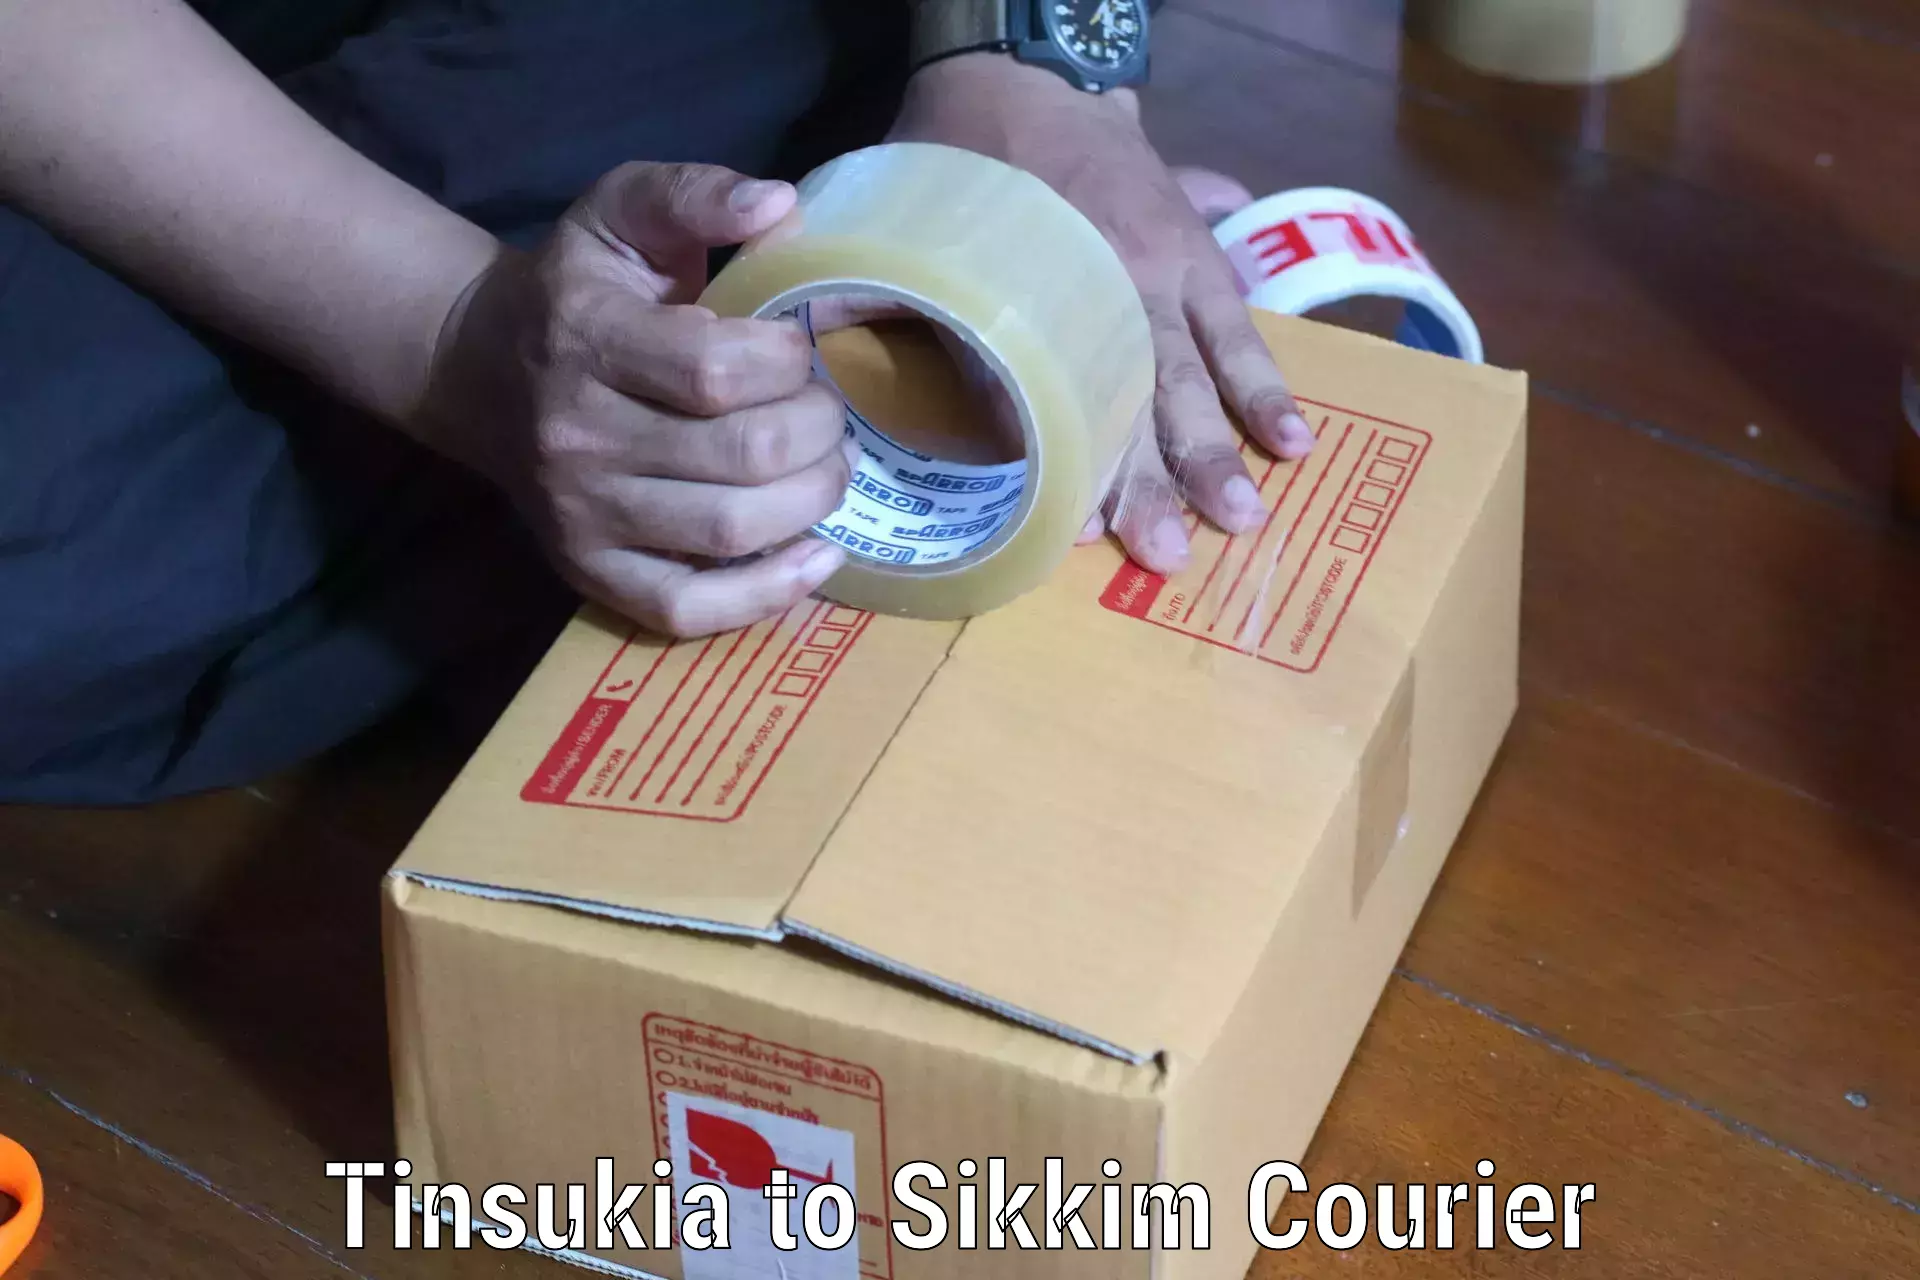 Pharmaceutical courier Tinsukia to Gangtok